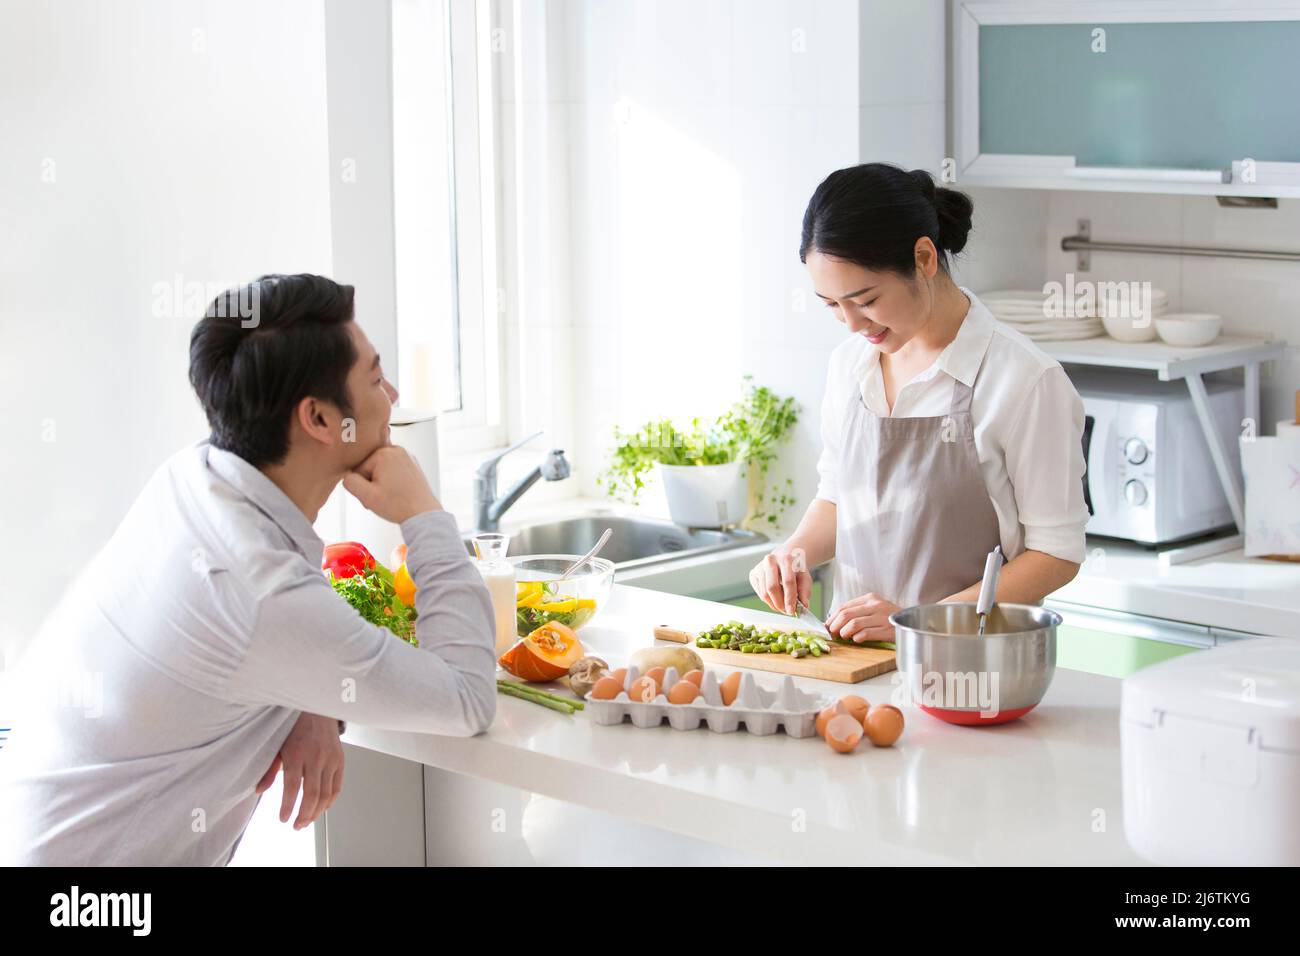 In der Familienküche kocht das junge Paar gerne zusammen. Ehemann blickt liebevoll auf Frau hackt Gemüse - Stock Foto Stockfoto